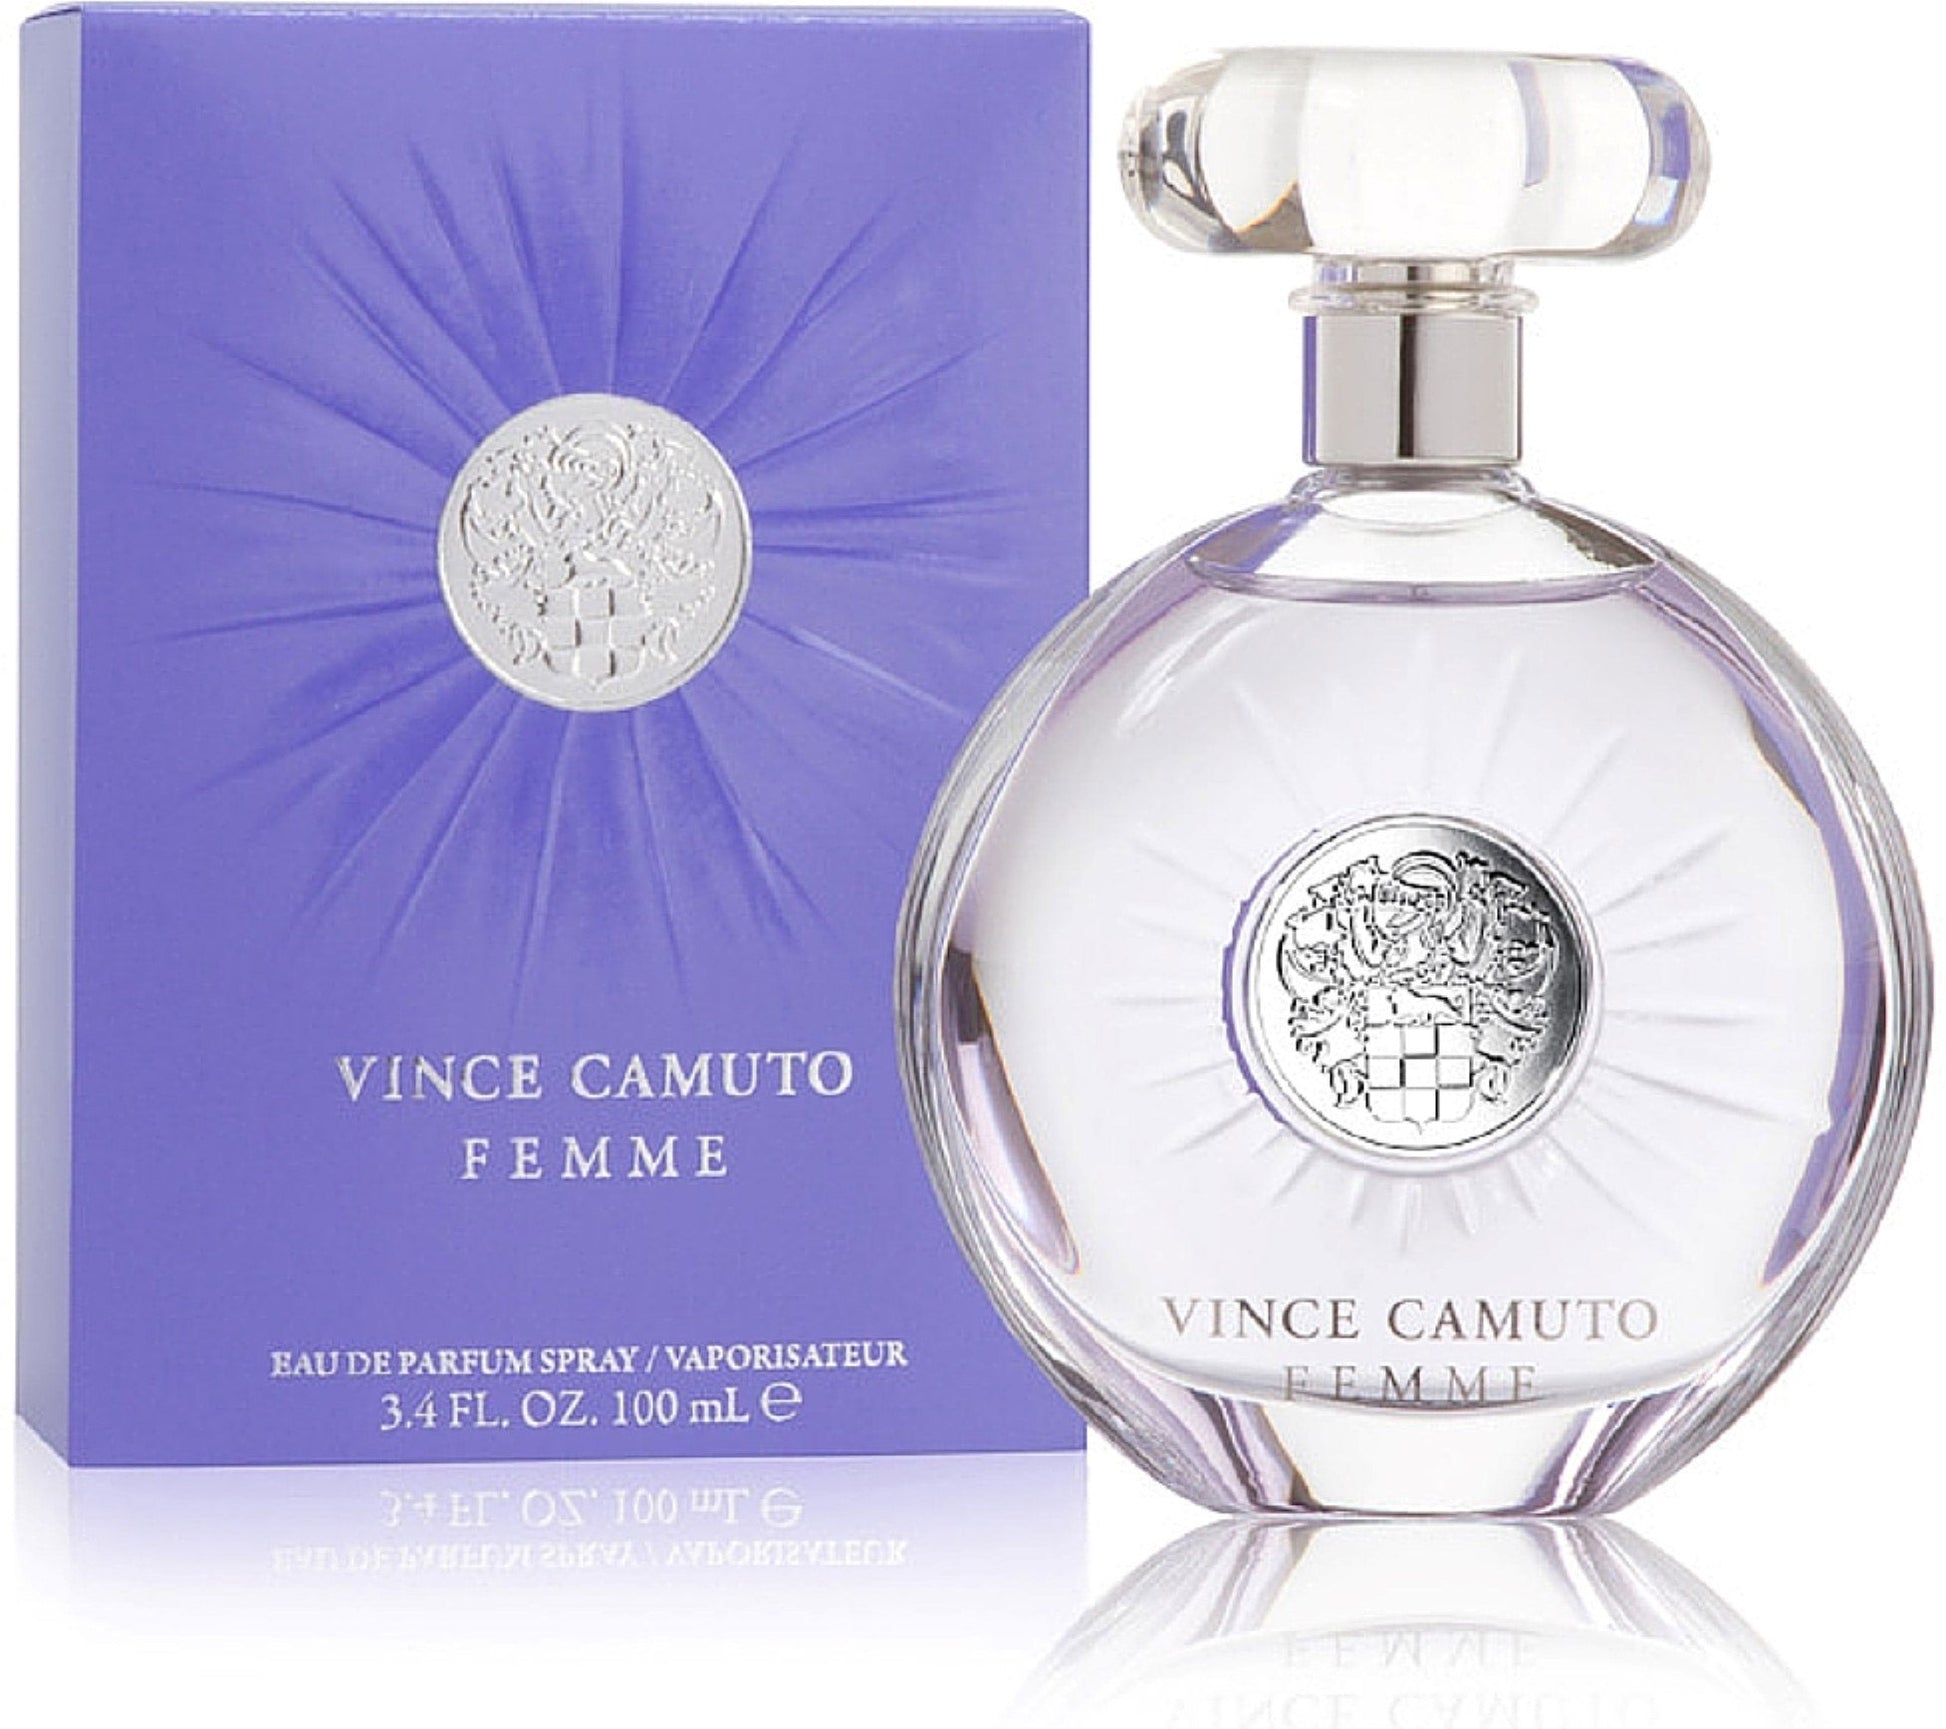 Vince Camuto Femme by Vince Camuto for Women -  Eau De Parfum Spray, Product image 1